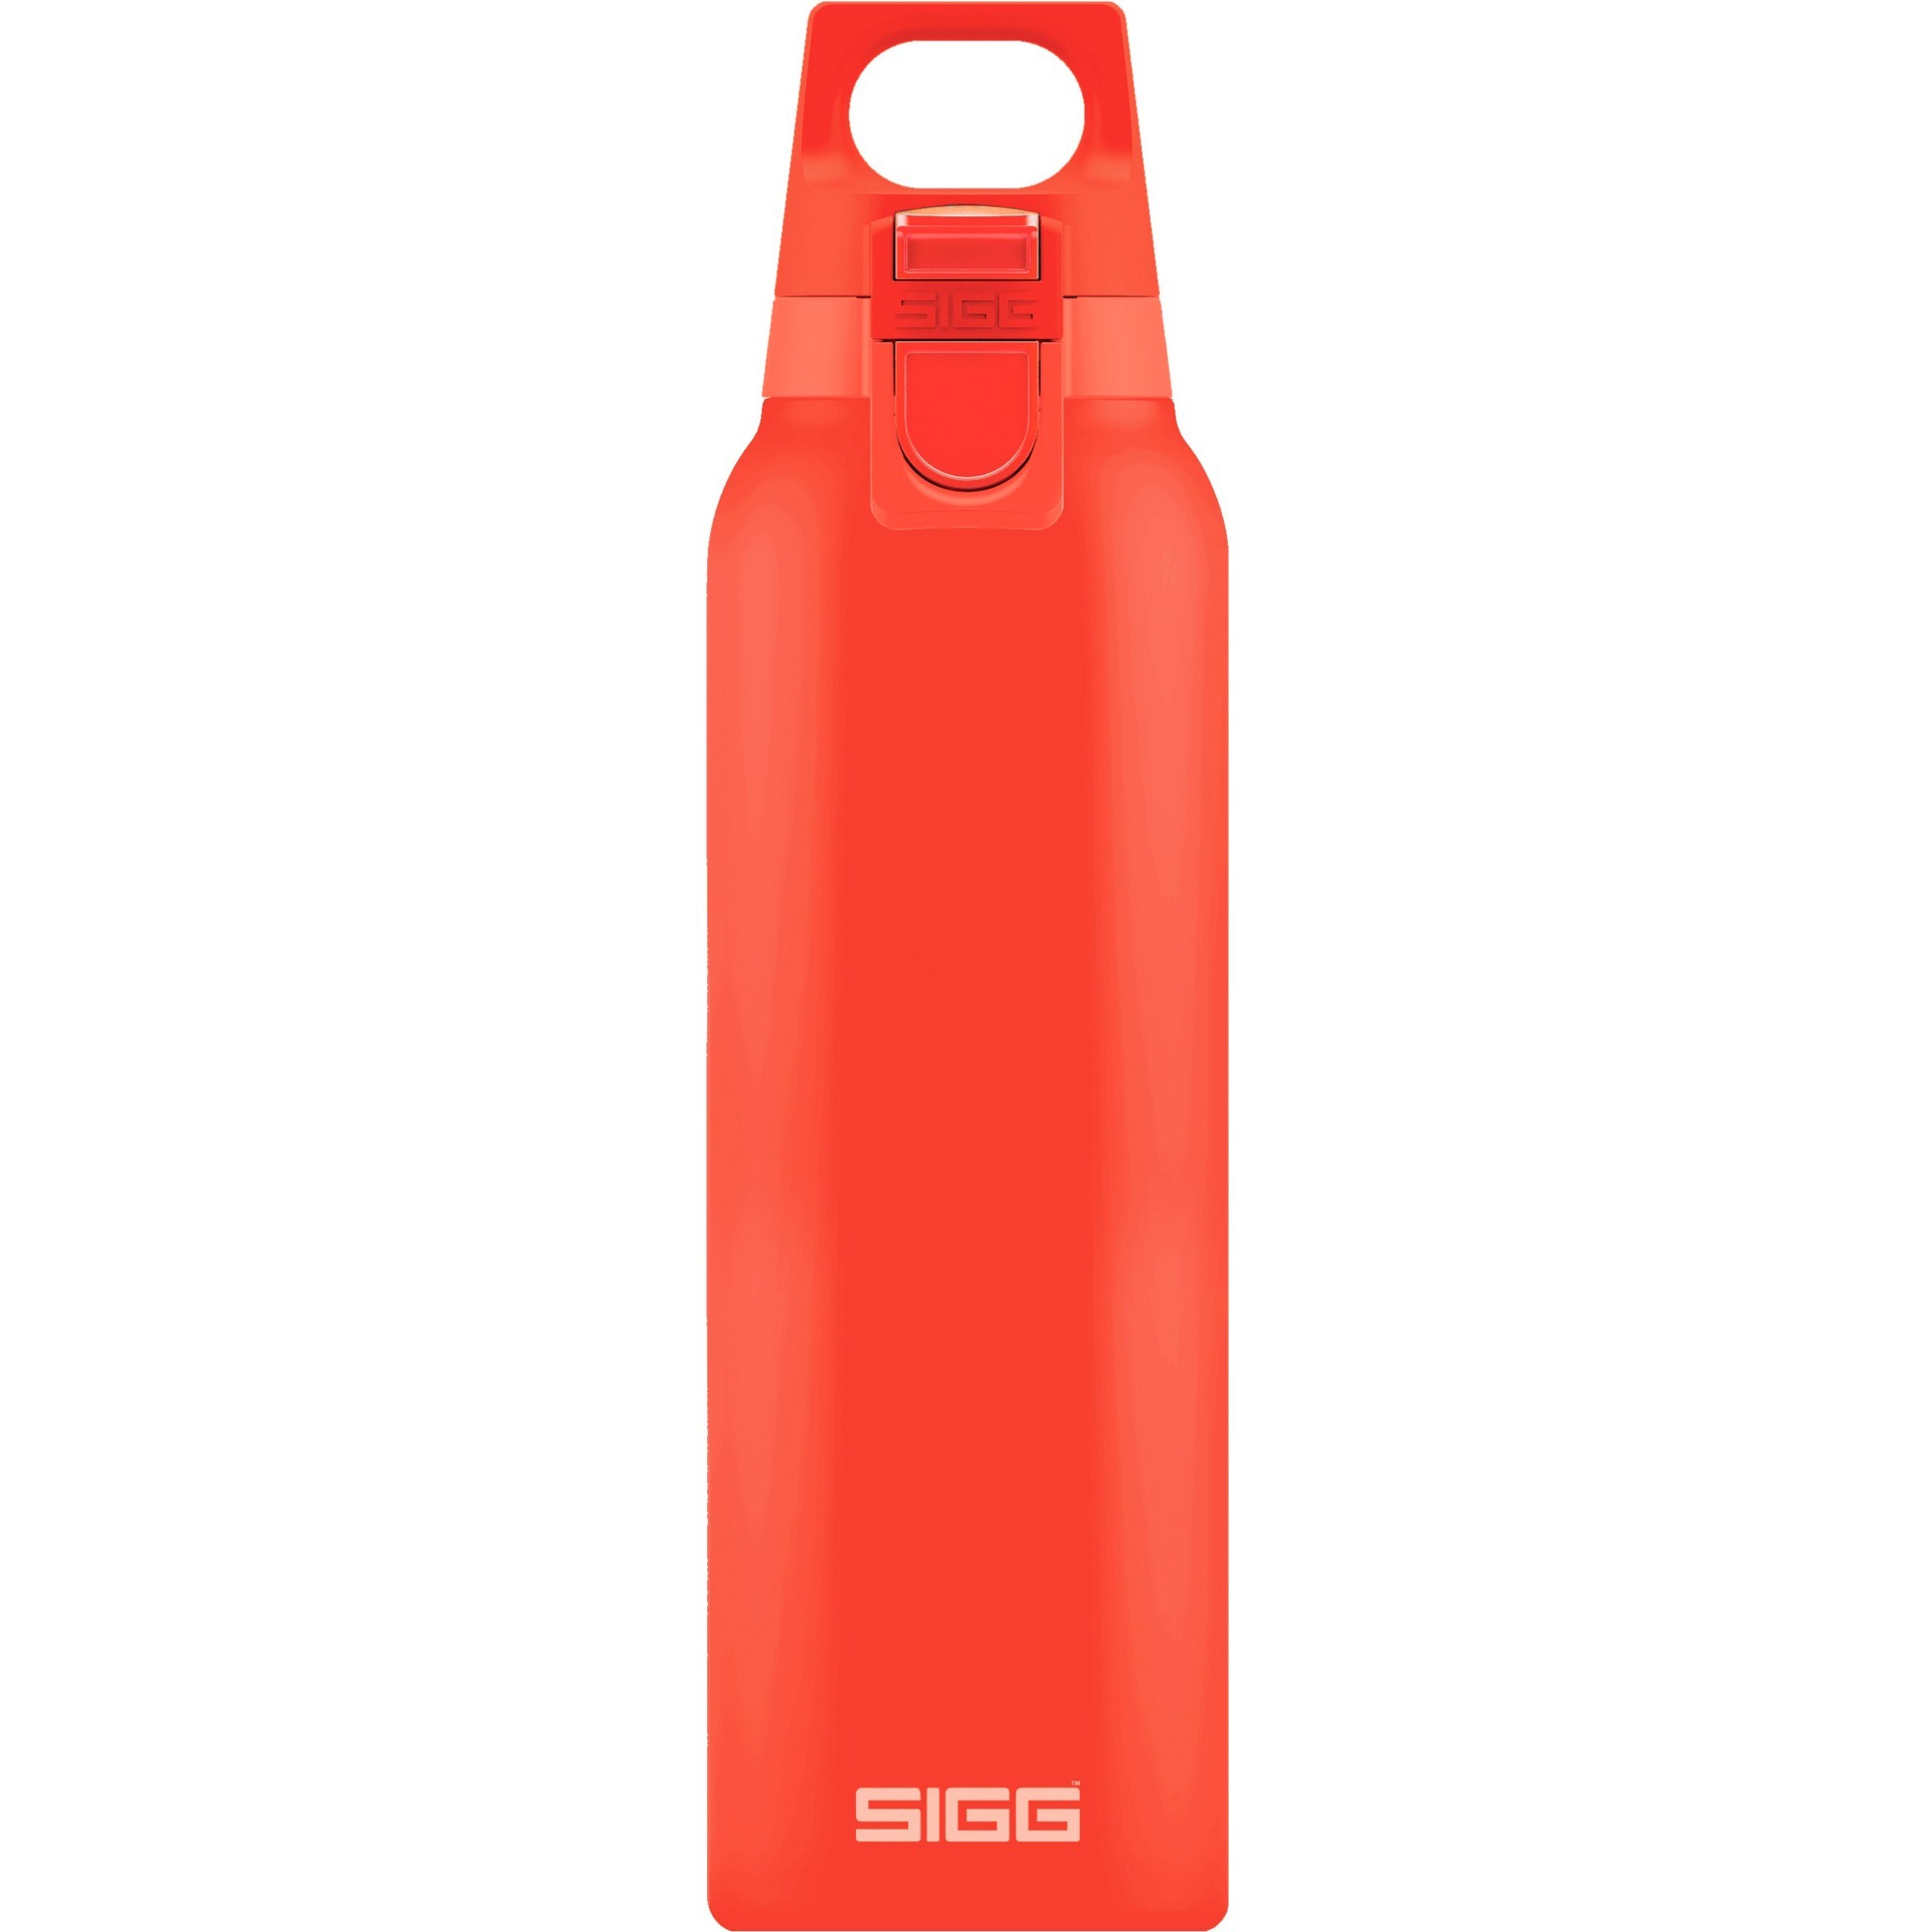 Image of Alternate - Hot & Cold One Scarlet 0,5 Liter, Thermosflasche online einkaufen bei Alternate